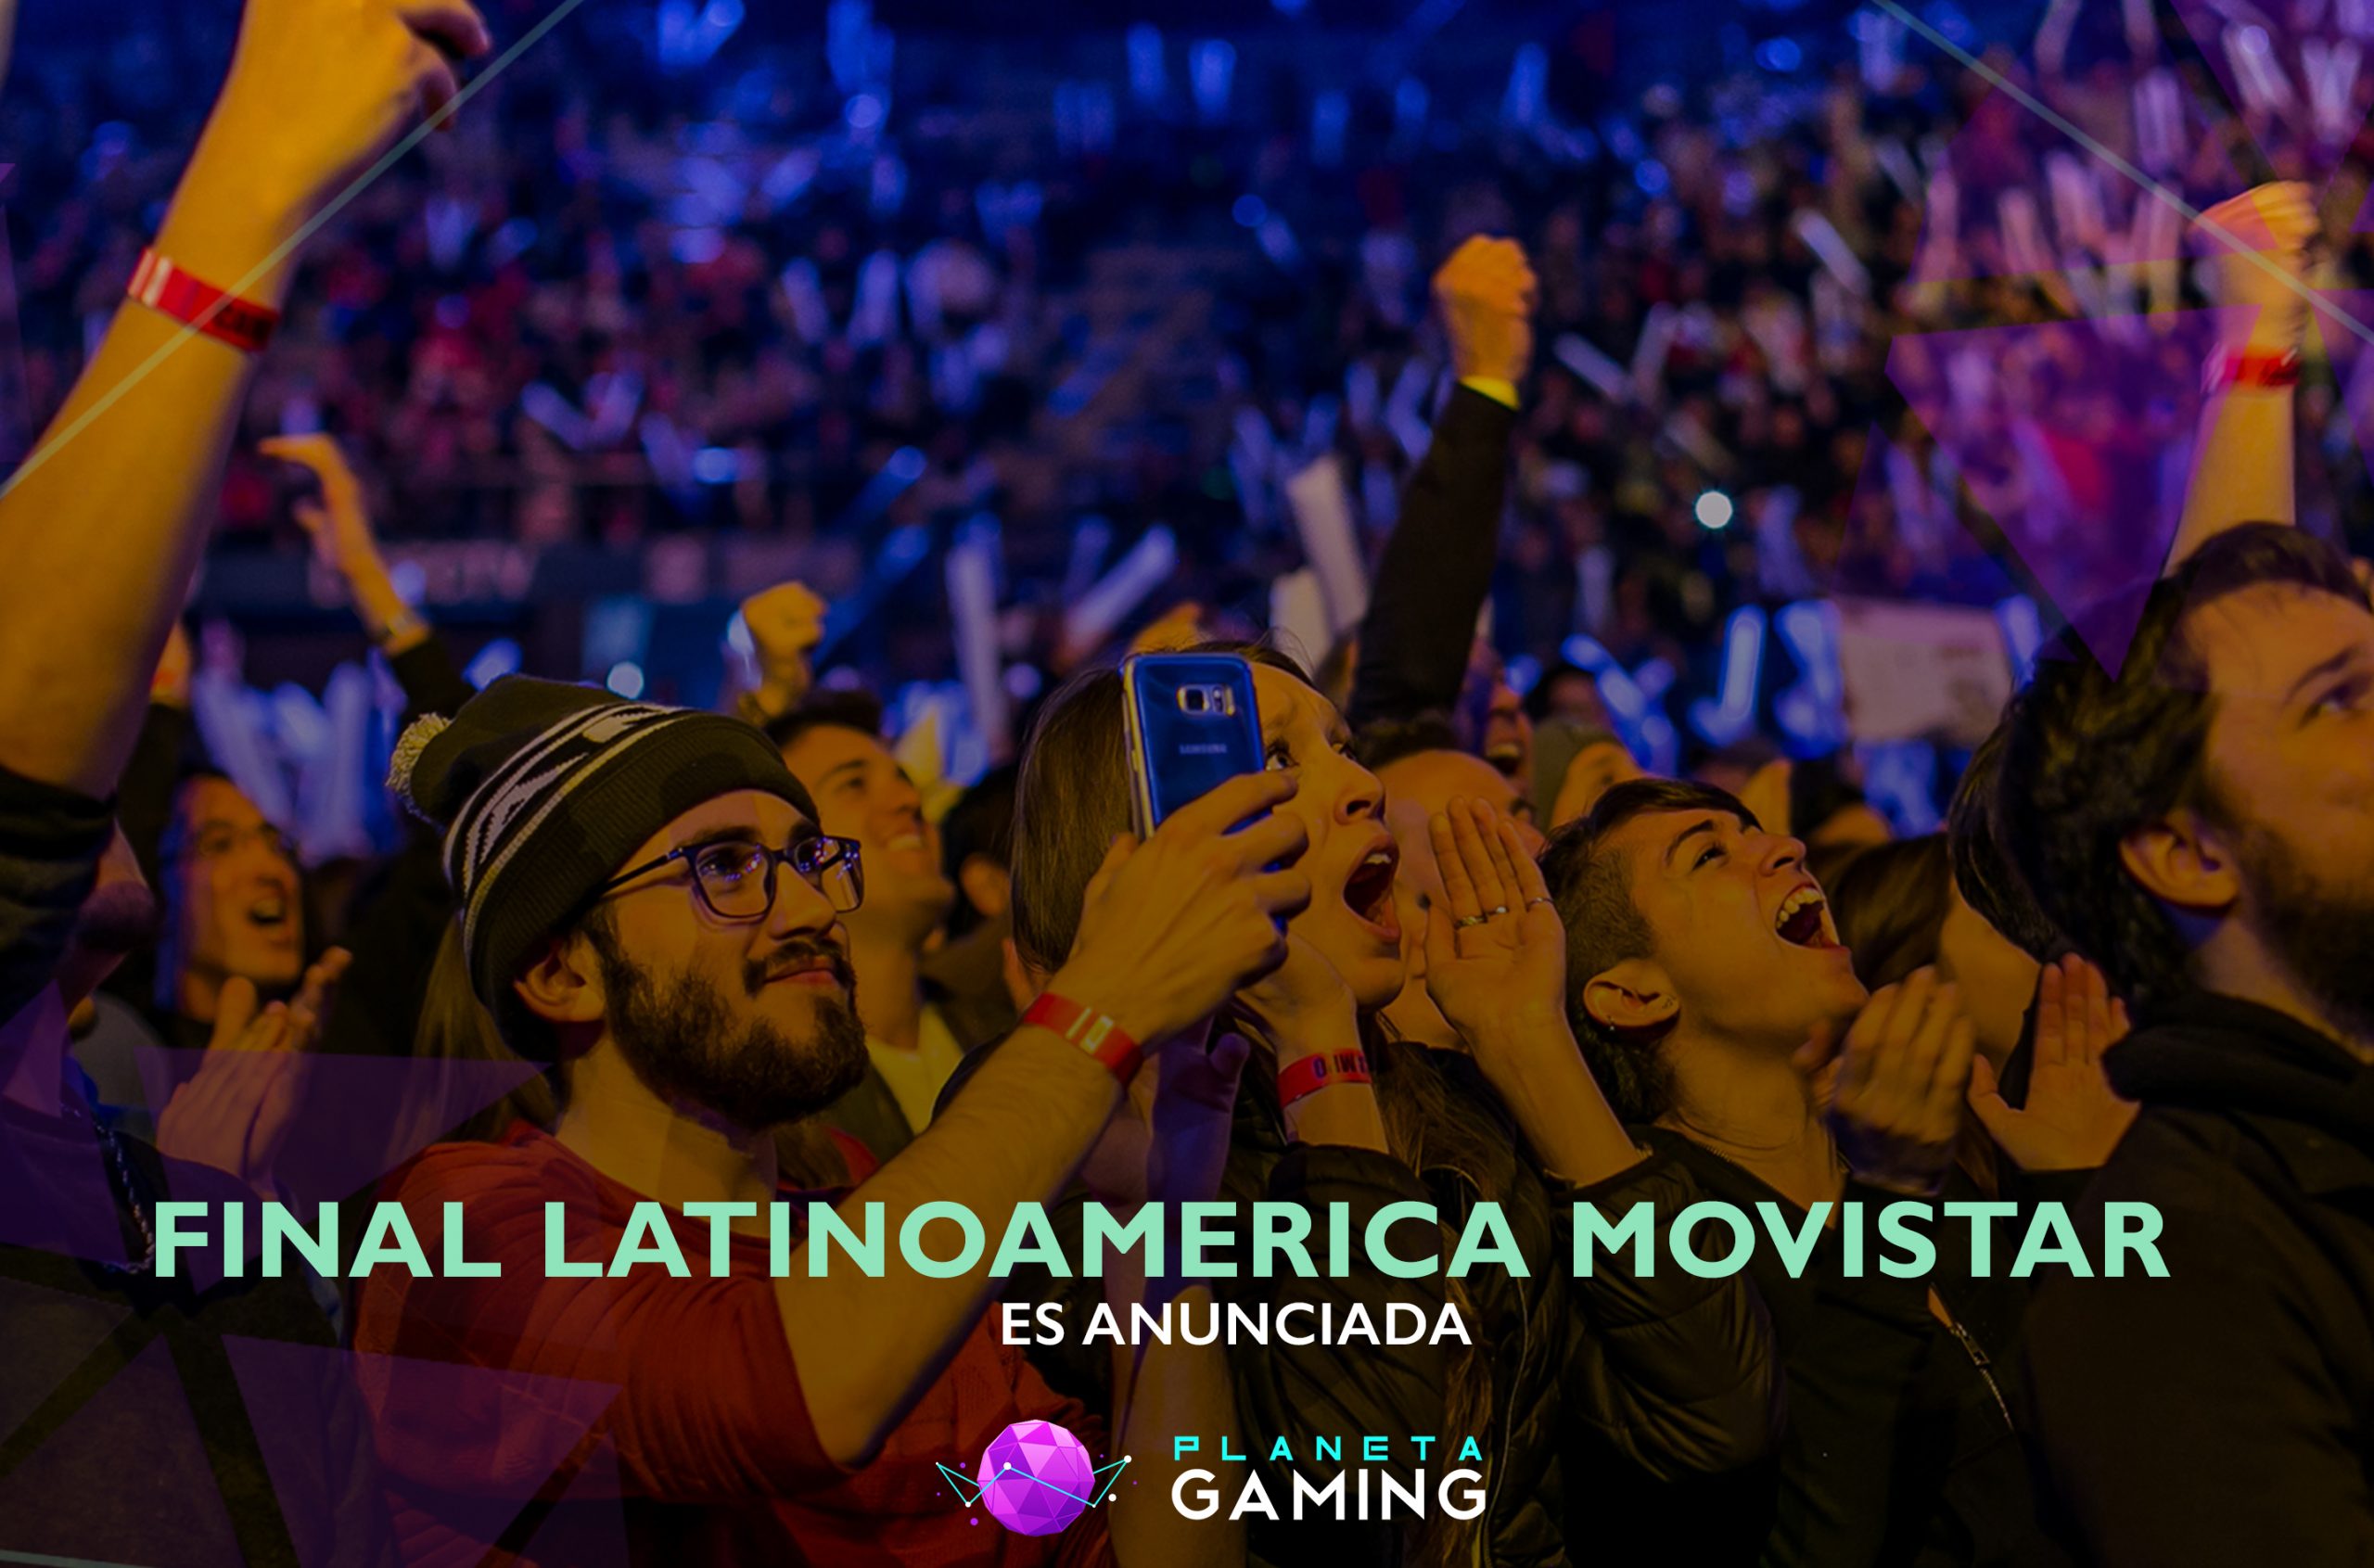 Final Latinoamerica Movistar 2018 es anunciada